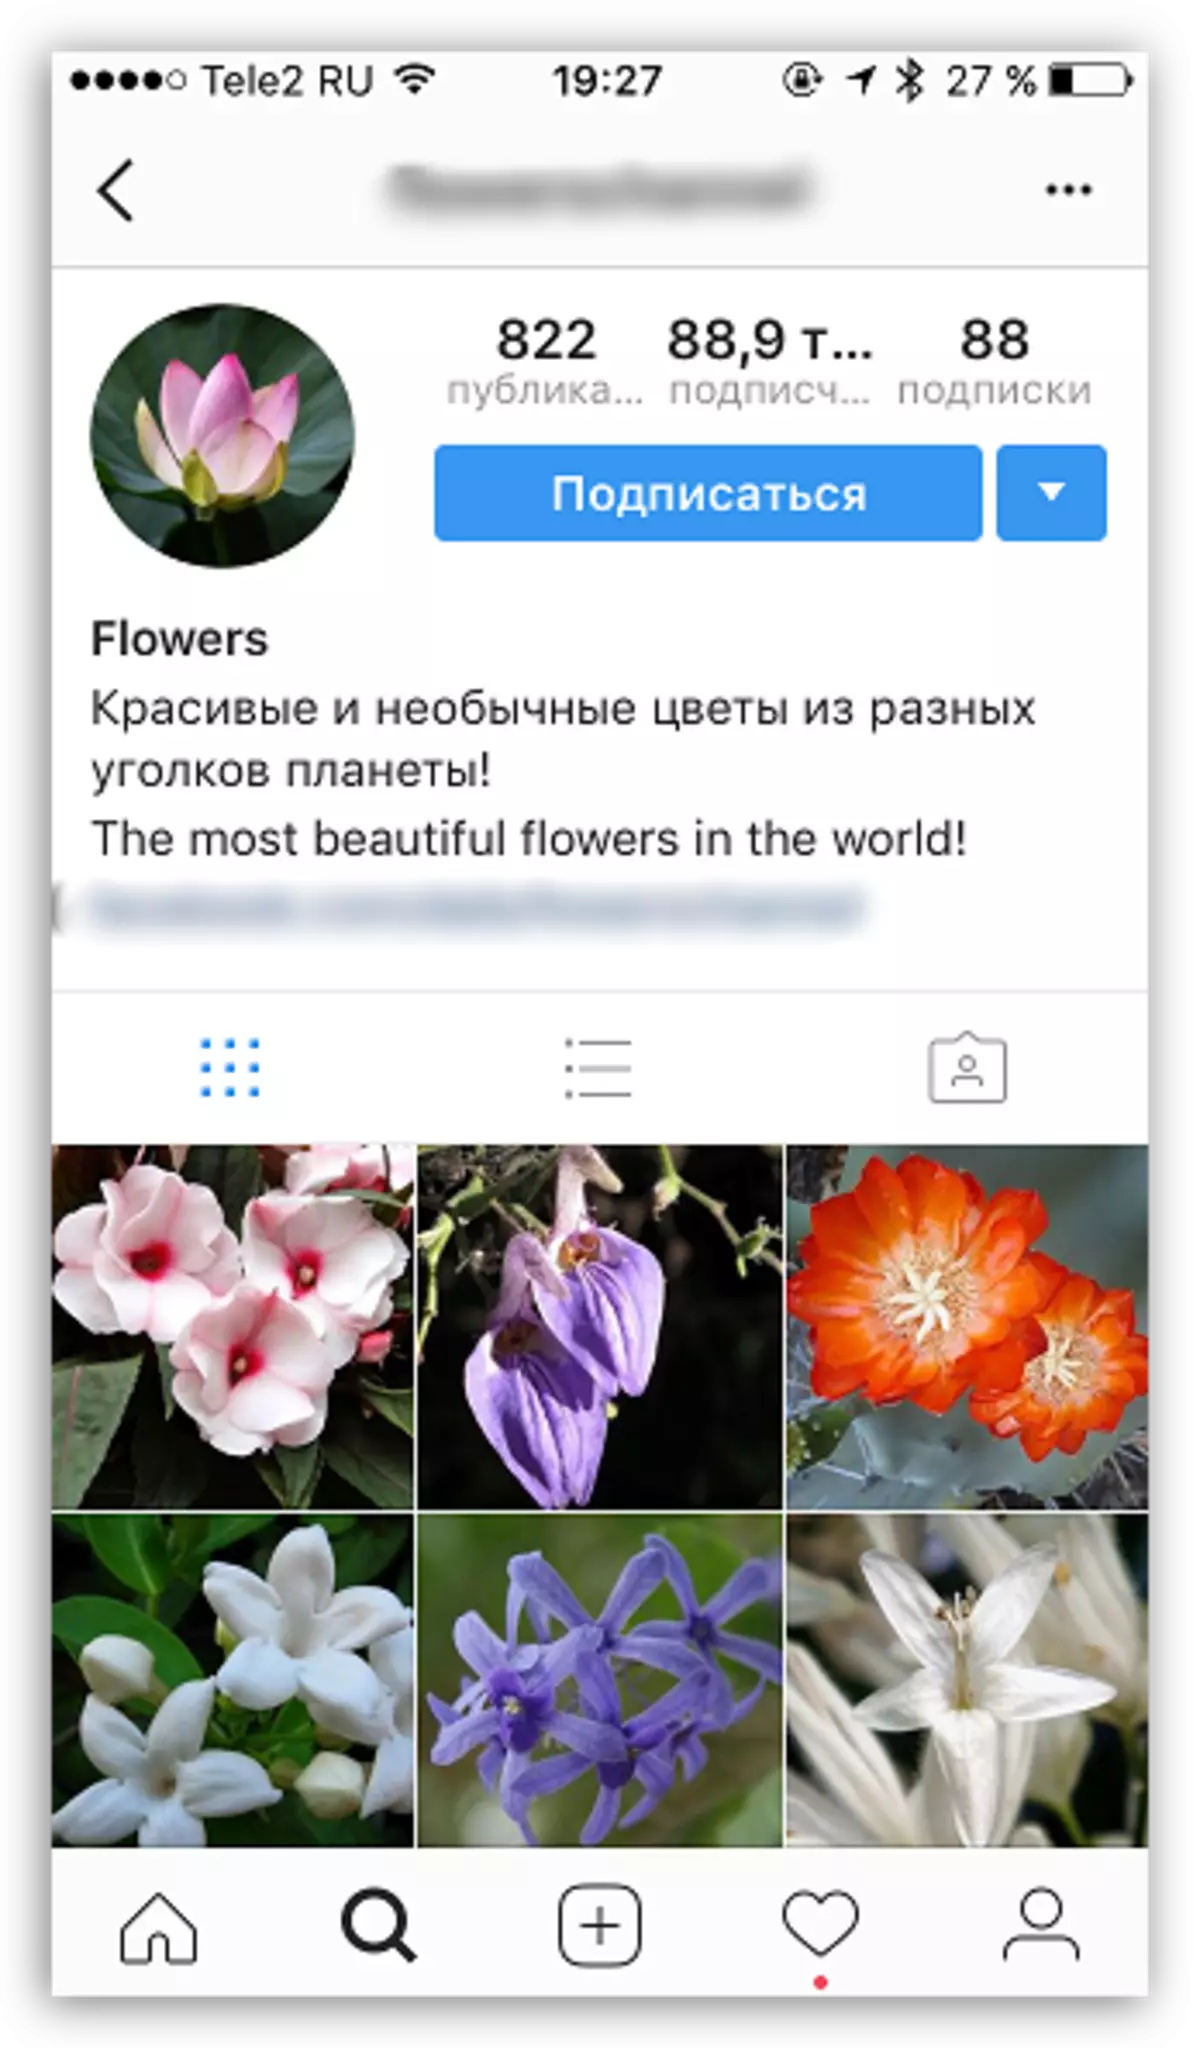 Escolhendo o assunto do perfil no Instagram